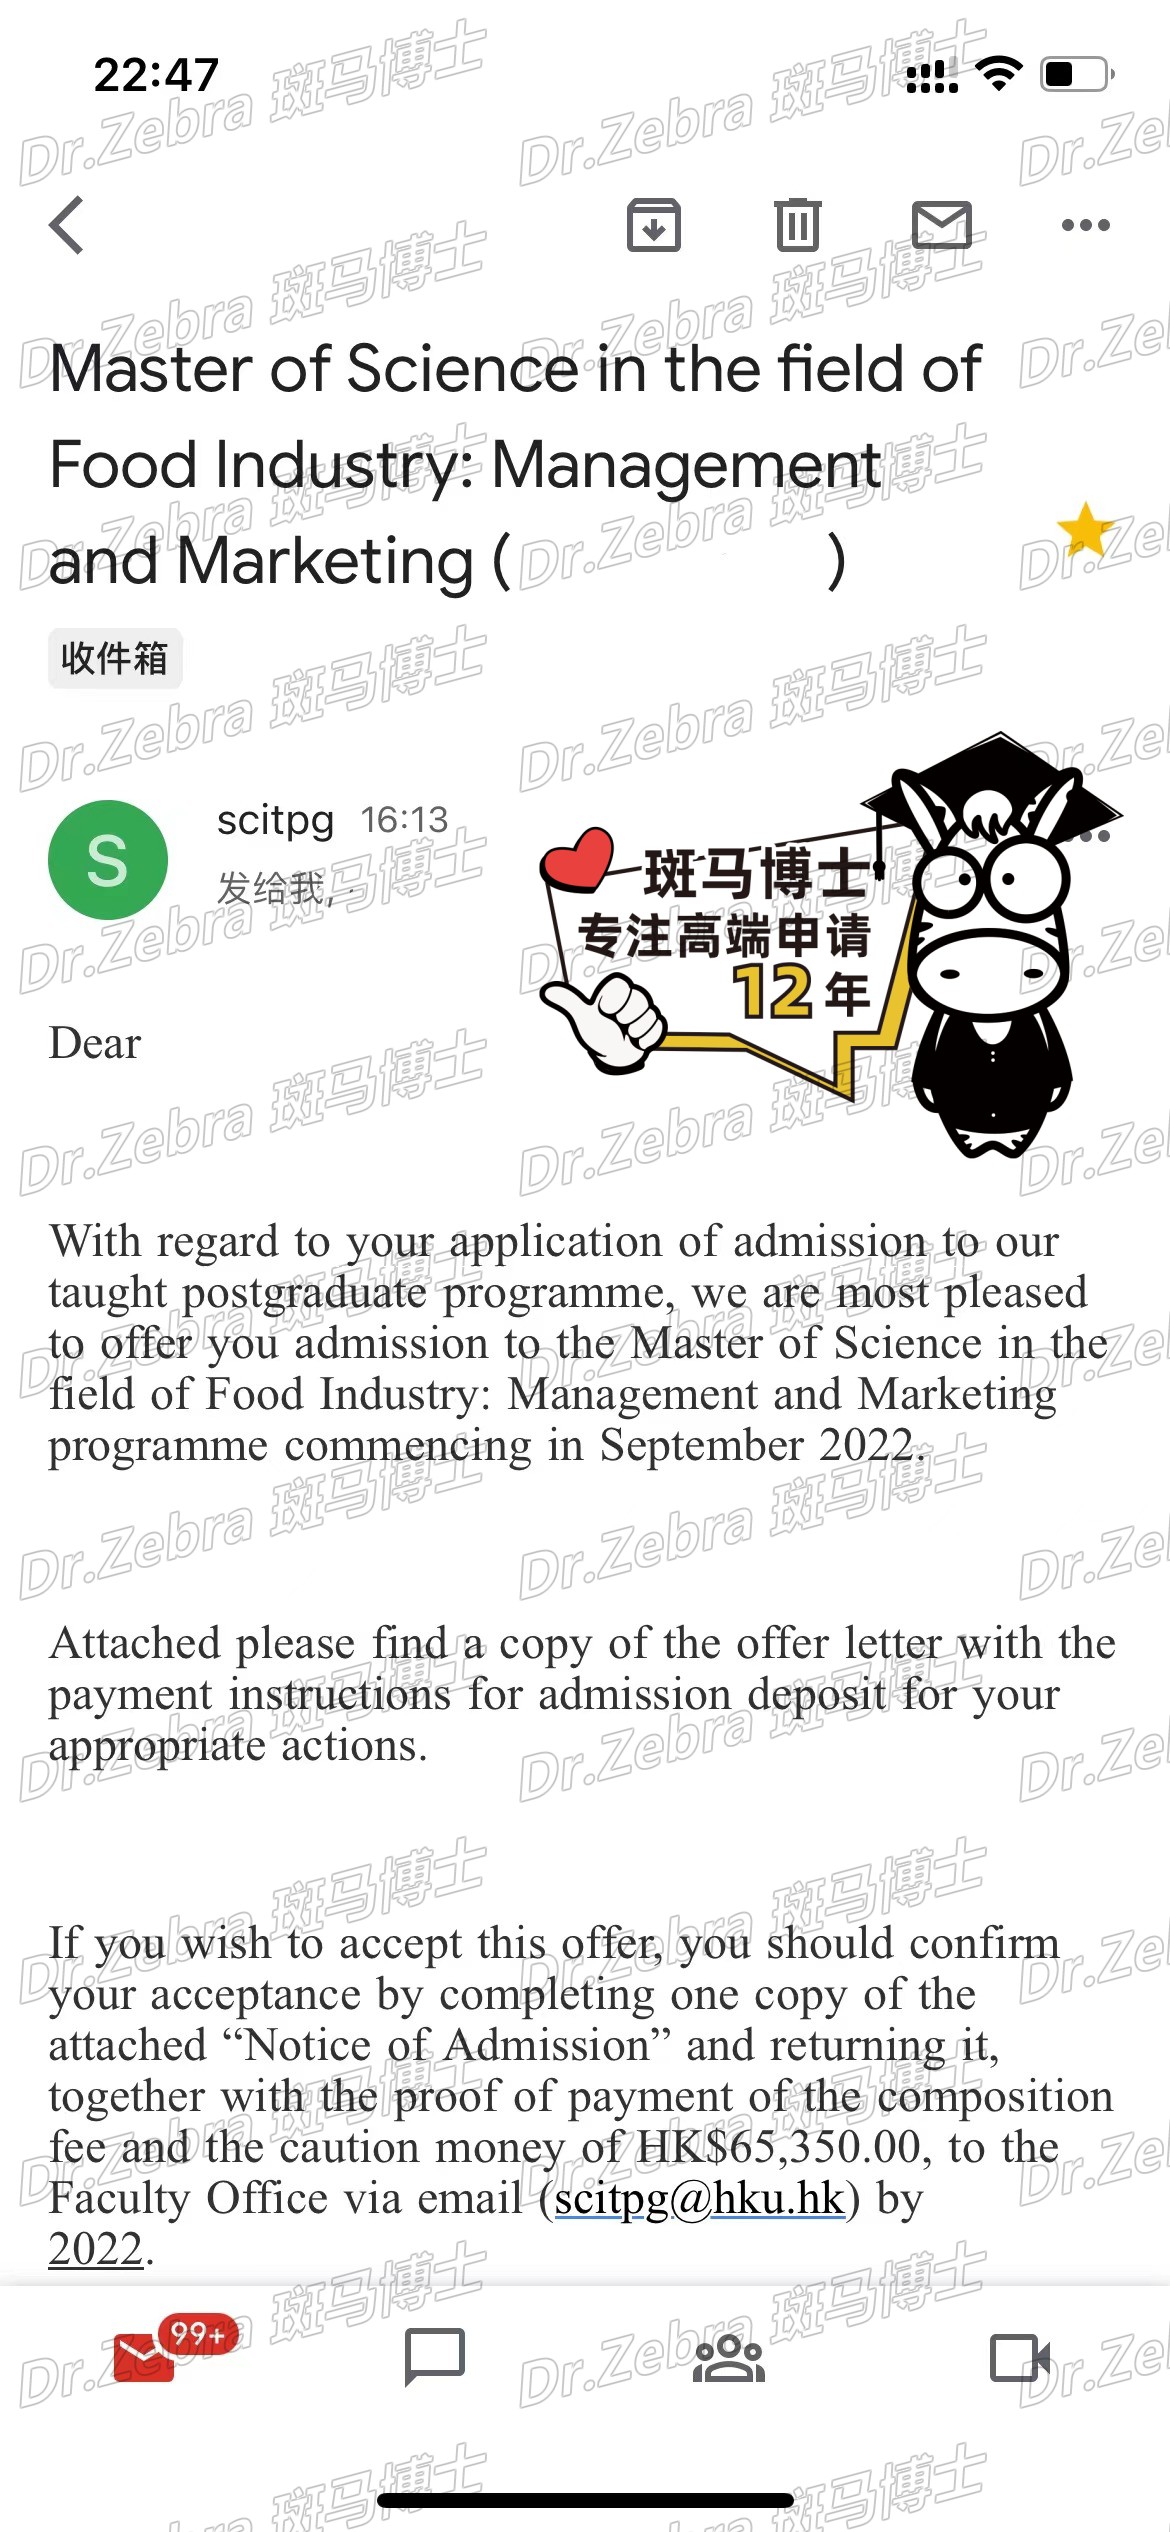 斑马博士、斑马博士留学中心、 香港大学 、The University of Hong Kong 、HKU、Master of Science in the Field of Food Industry: Management and Marketing